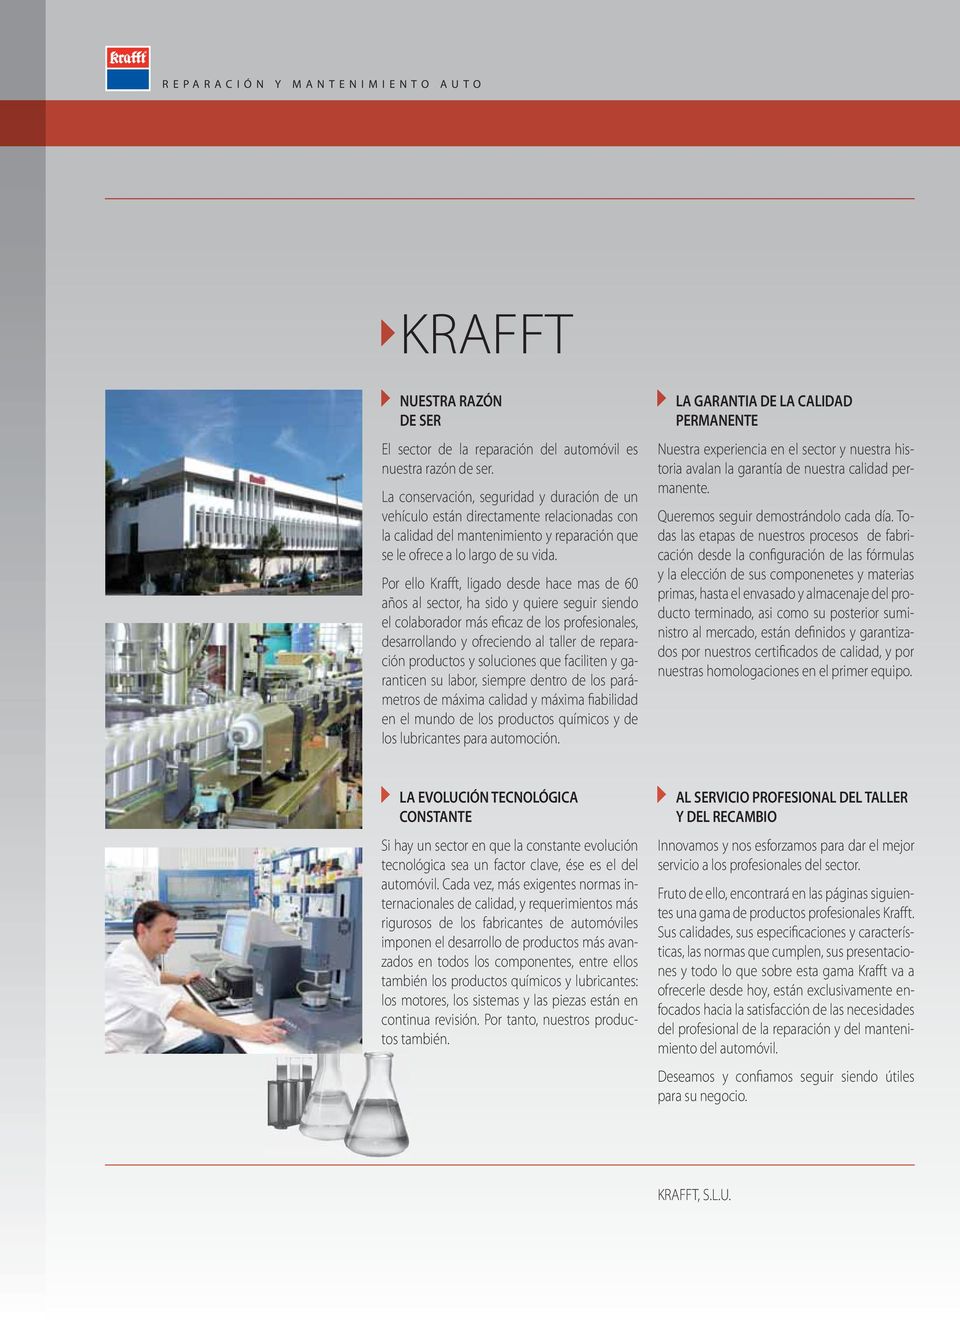 Por ello Krafft, ligado desde hace mas de 60 años al sector, ha sido y quiere seguir siendo el colaborador más eficaz de los profesionales, desarrollando y ofreciendo al taller de reparación